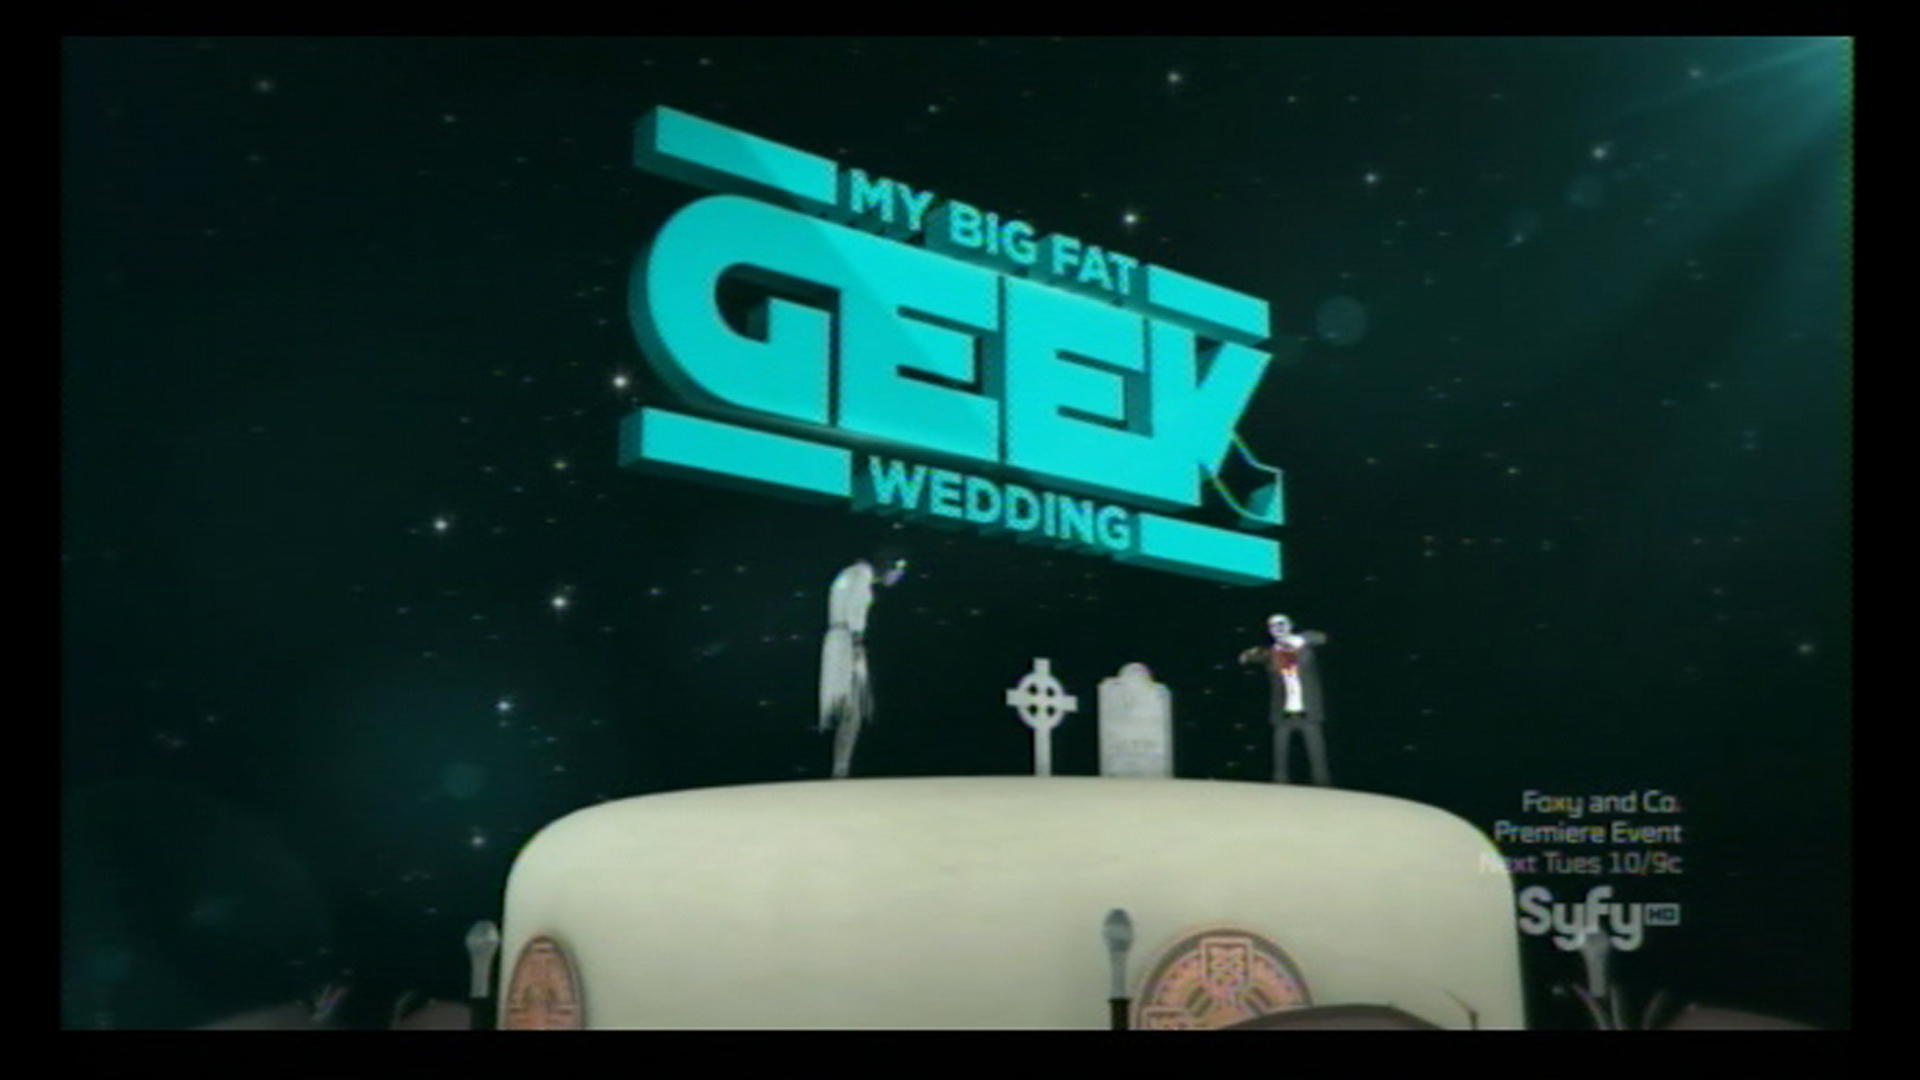 My Big Fat Geek Wedding